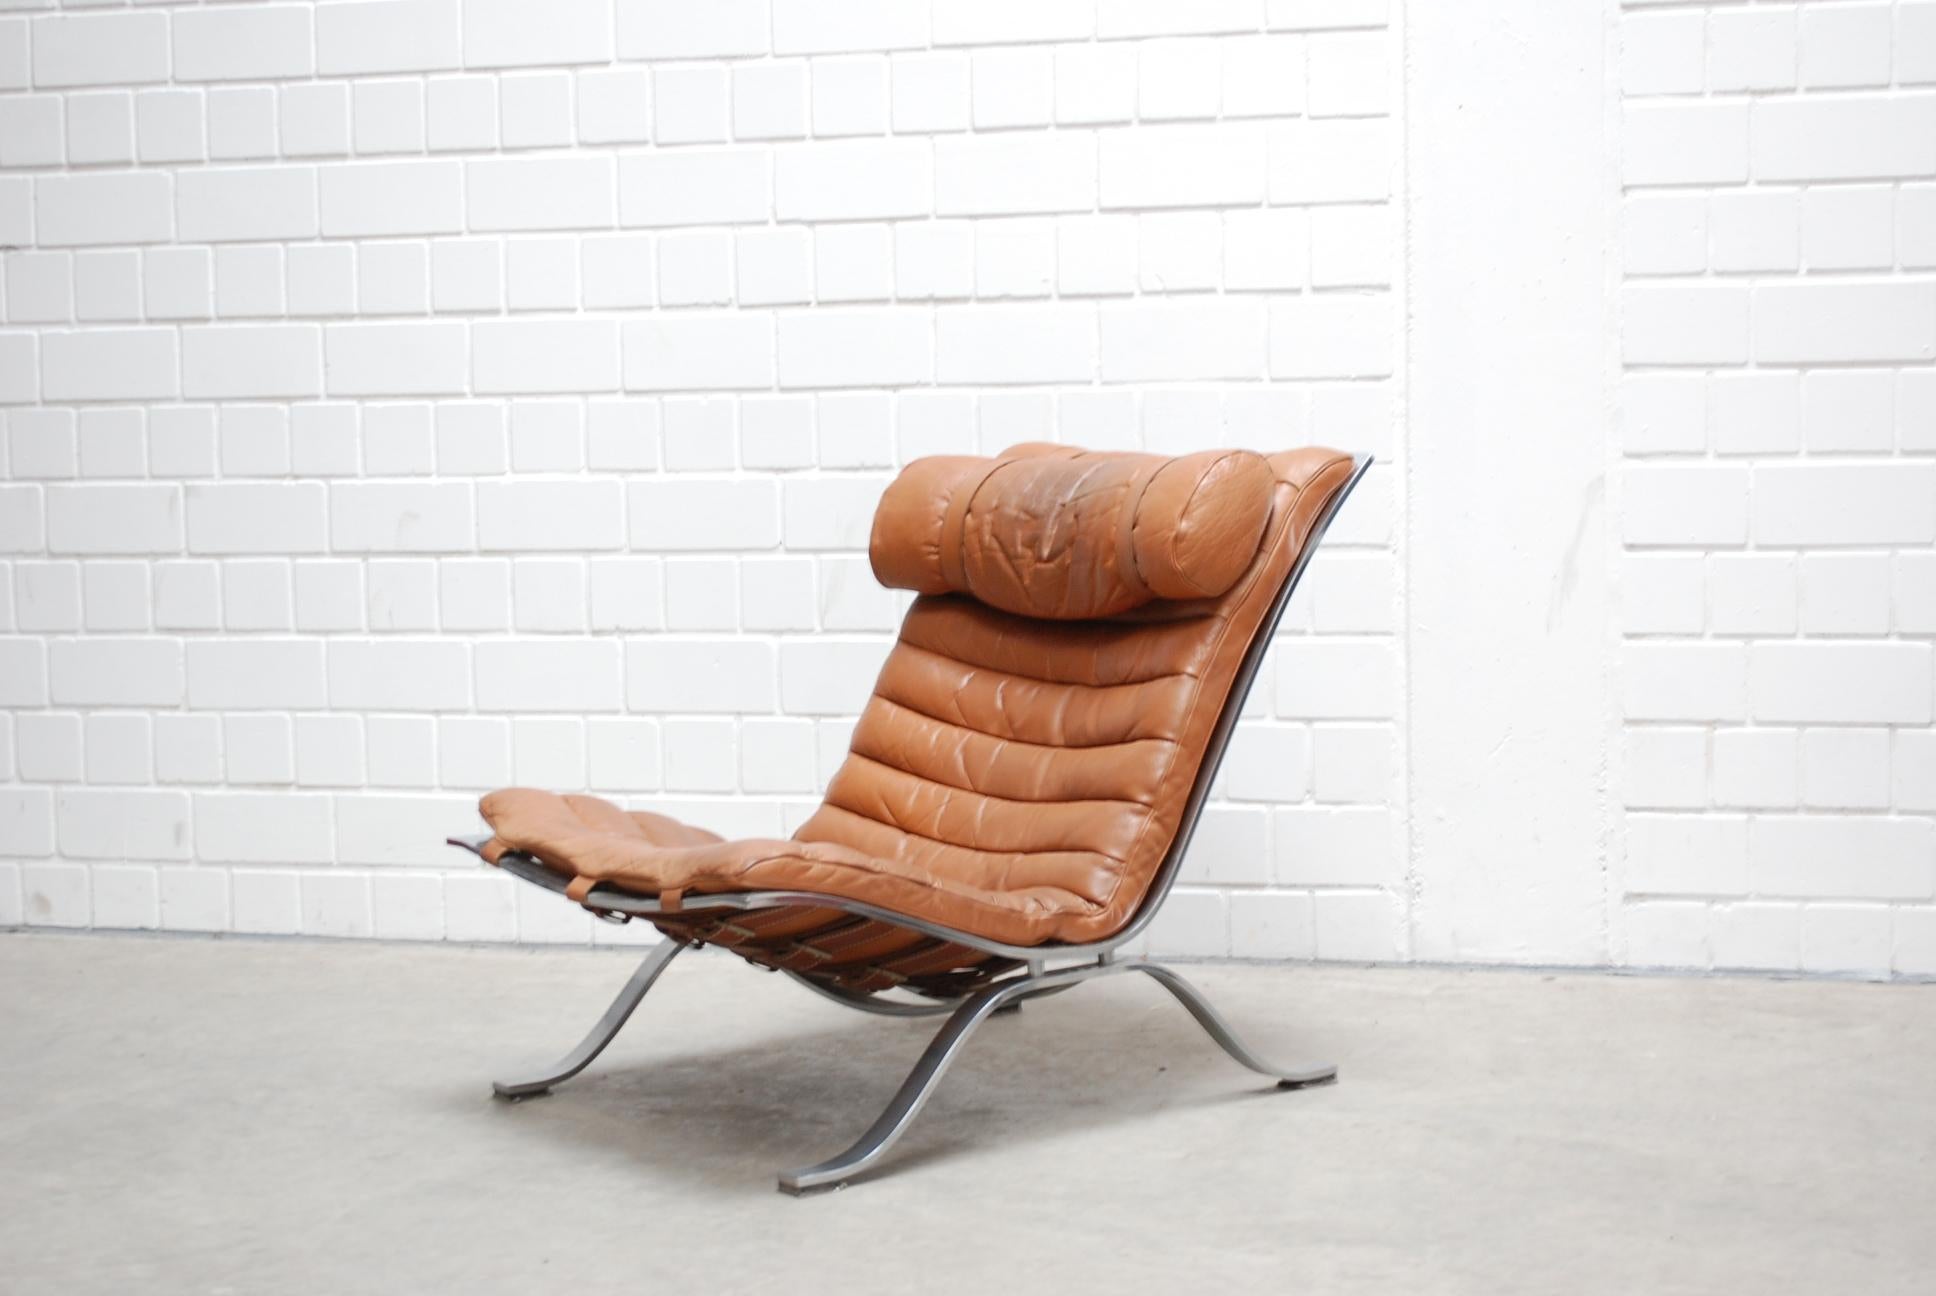 Cette chaise longue Ari a été conçue et produite par Arne Norell en Suède.
Il est réalisé en acier chromé et revêtu de cuir cognac brandy.
Superbes détails en cuir avec ceinture et cuir de selle épais.
Un fauteuil très confortable.
 